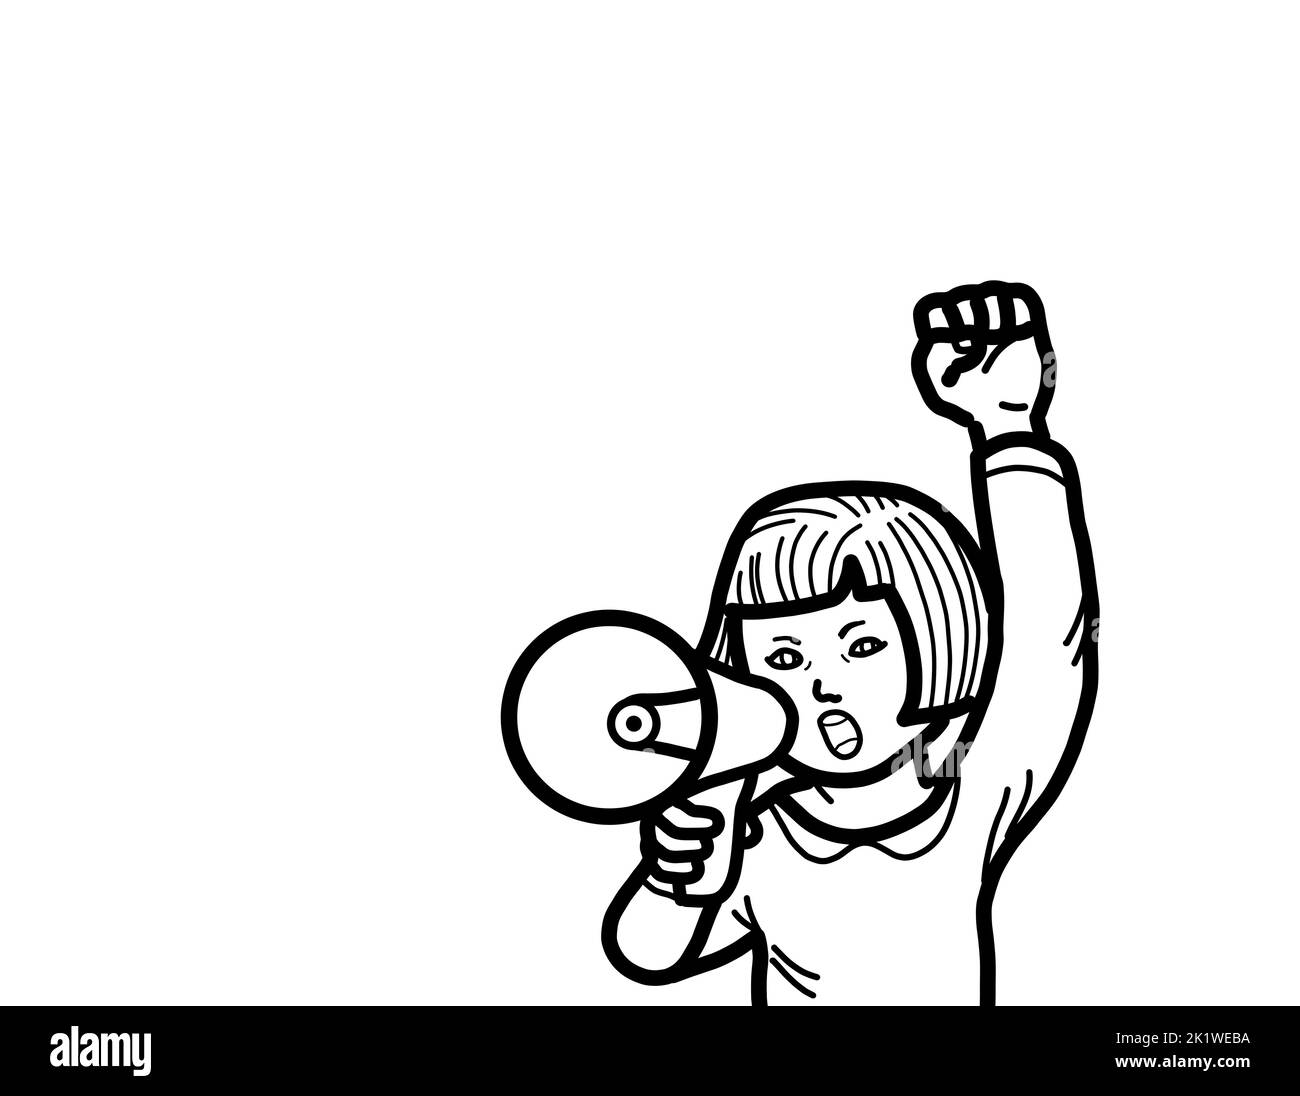 Eine junge weibliche Person Hand hält Megaphon schreiend und hob Arm Faust. Das Protestdemonstrationskonzept des studentischen Aktivisten. Stockfoto